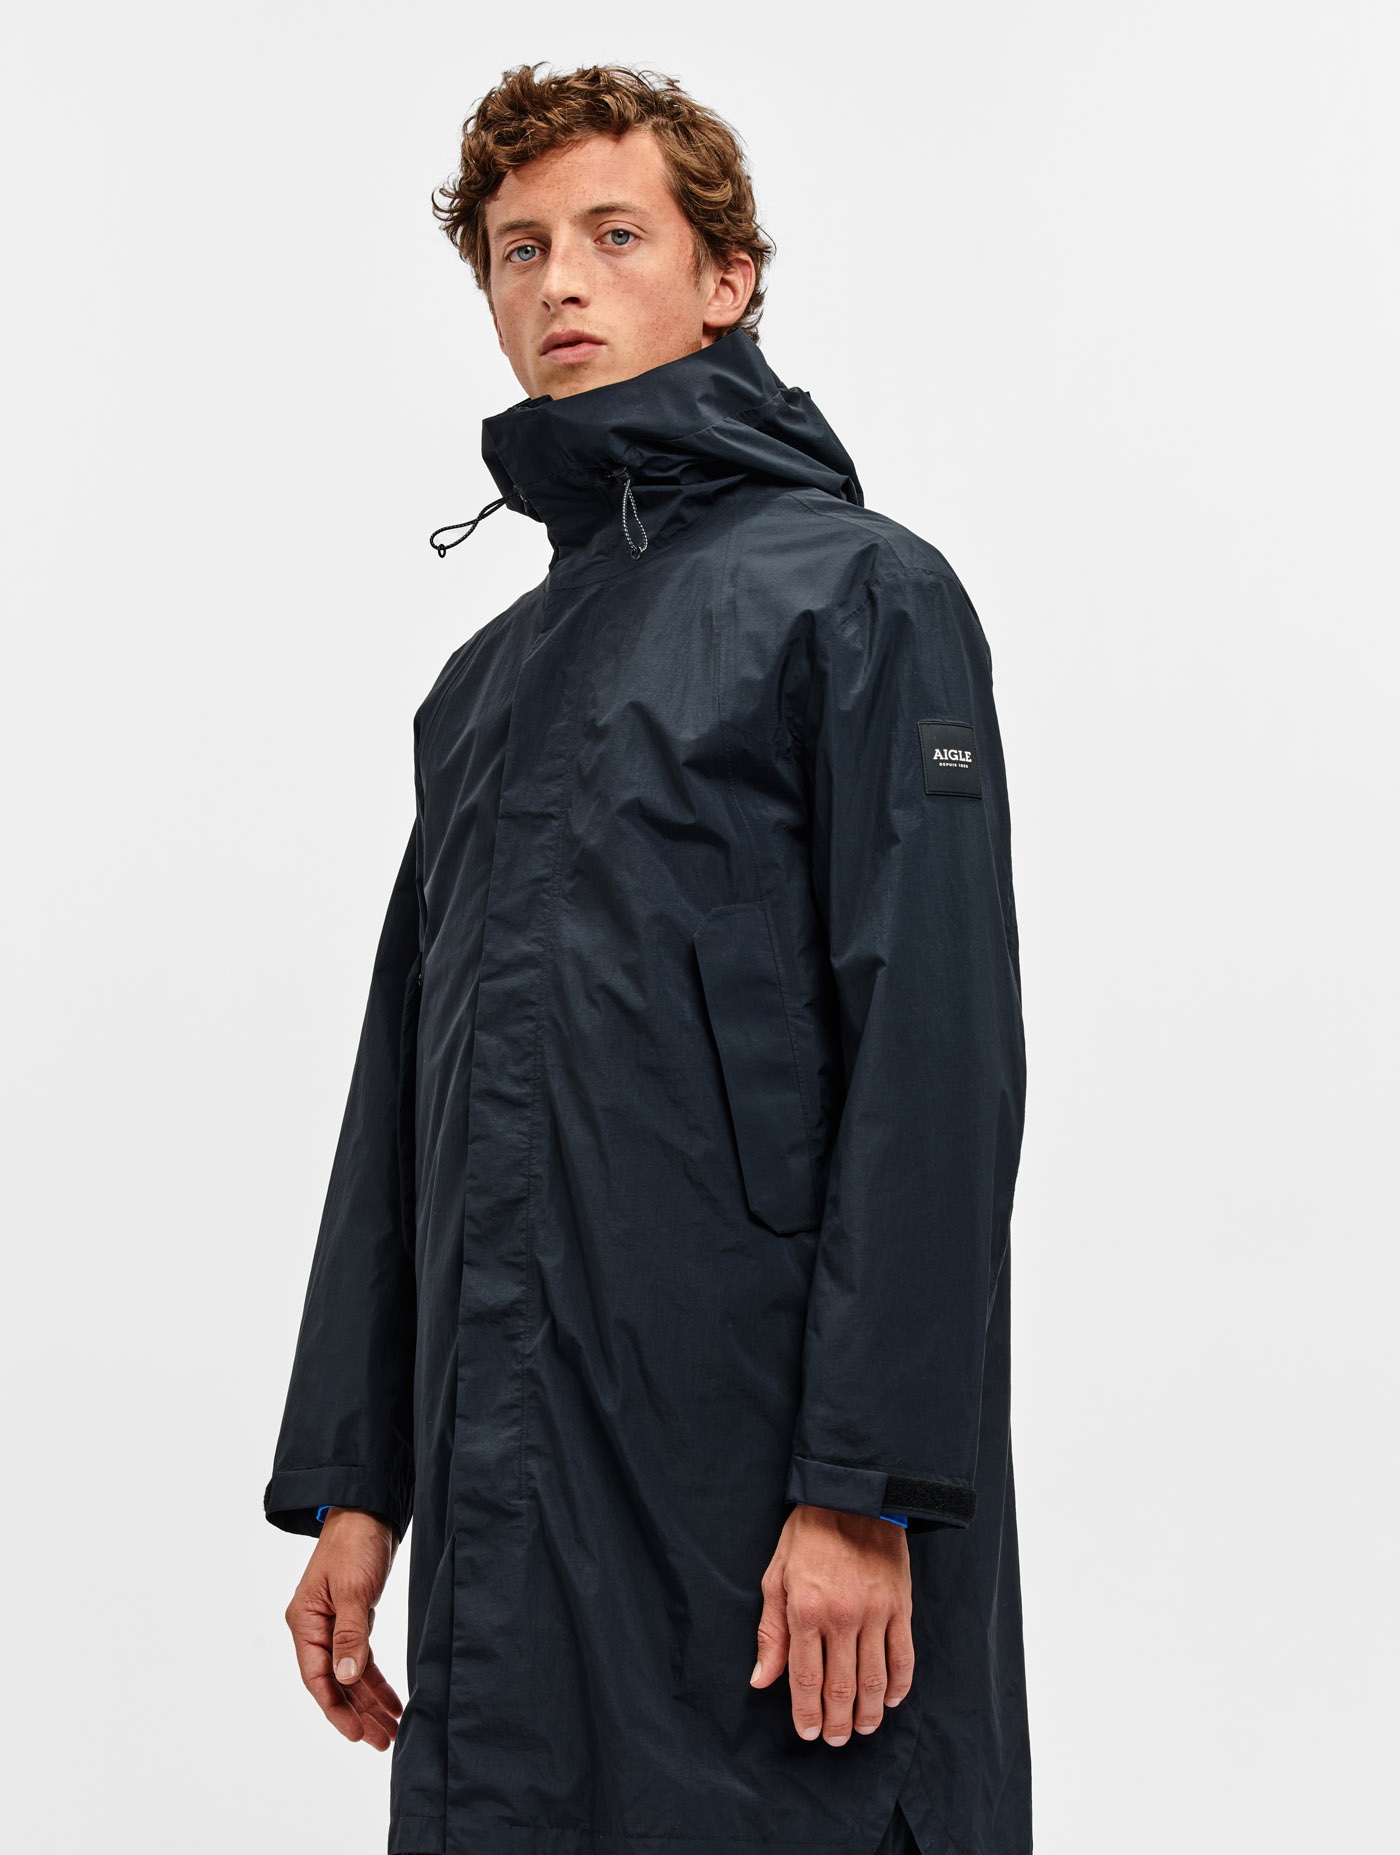 Men's Coats, Men's Jackets ⋅ Parka, Raincoat | AIGLE